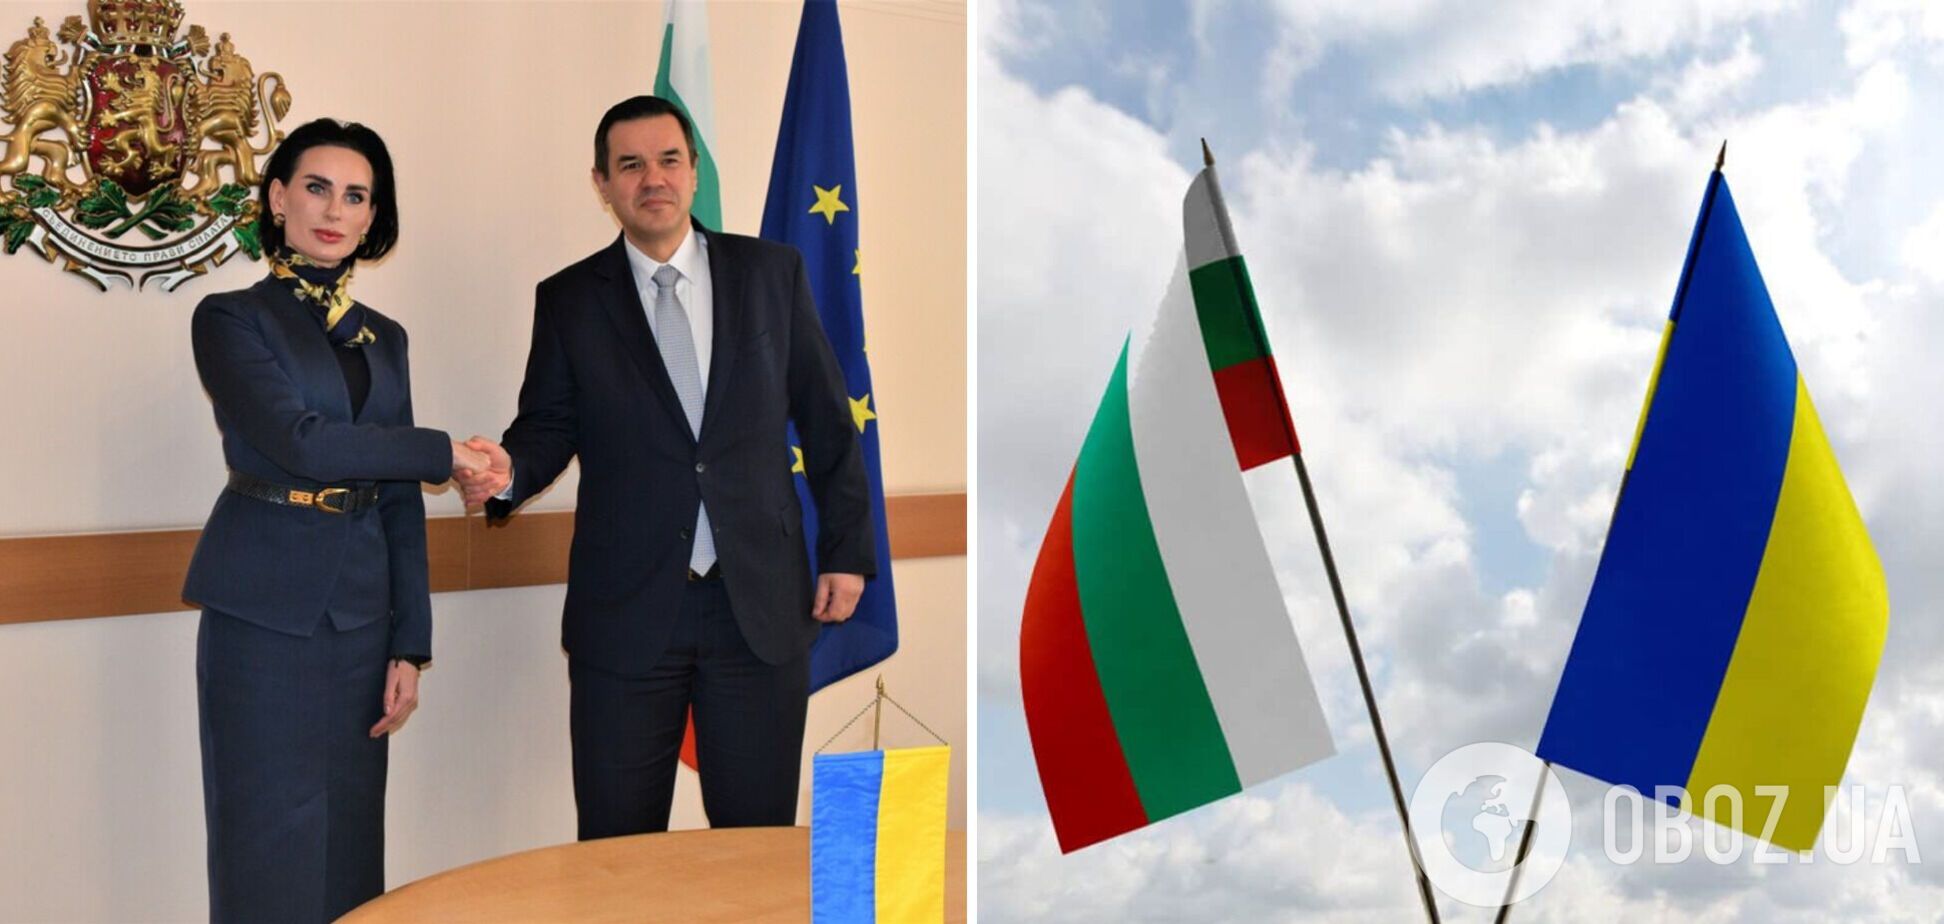 Болгарія планує збільшити імпорт зерна з України і допоможе в повоєнній відбудові, – глава мінекономіки на зустрічі з пані послом Ілащук